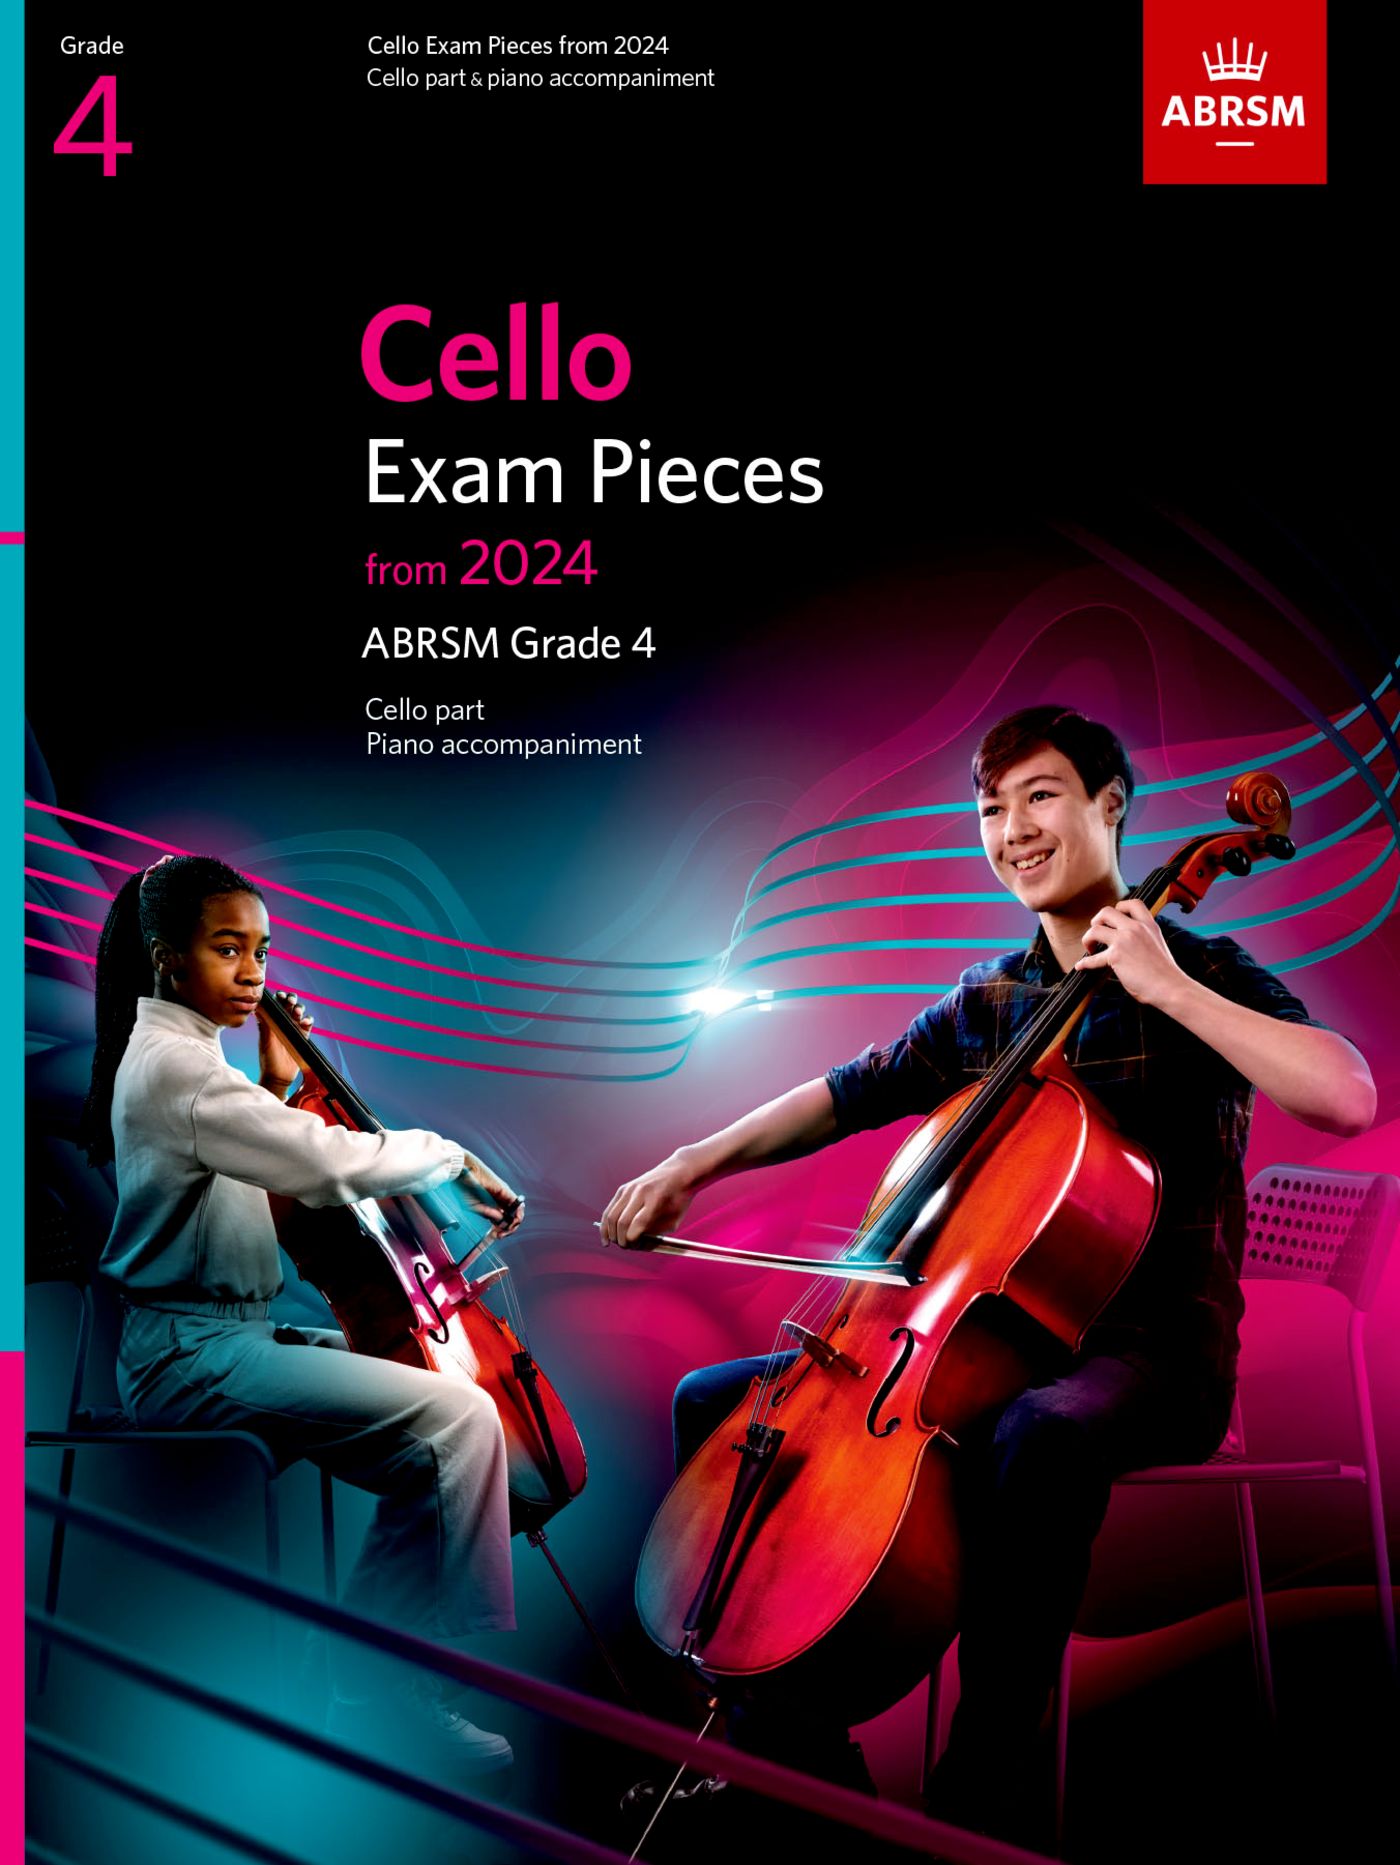 ABRSM Cello Exam Pieces 2024, Grade 4